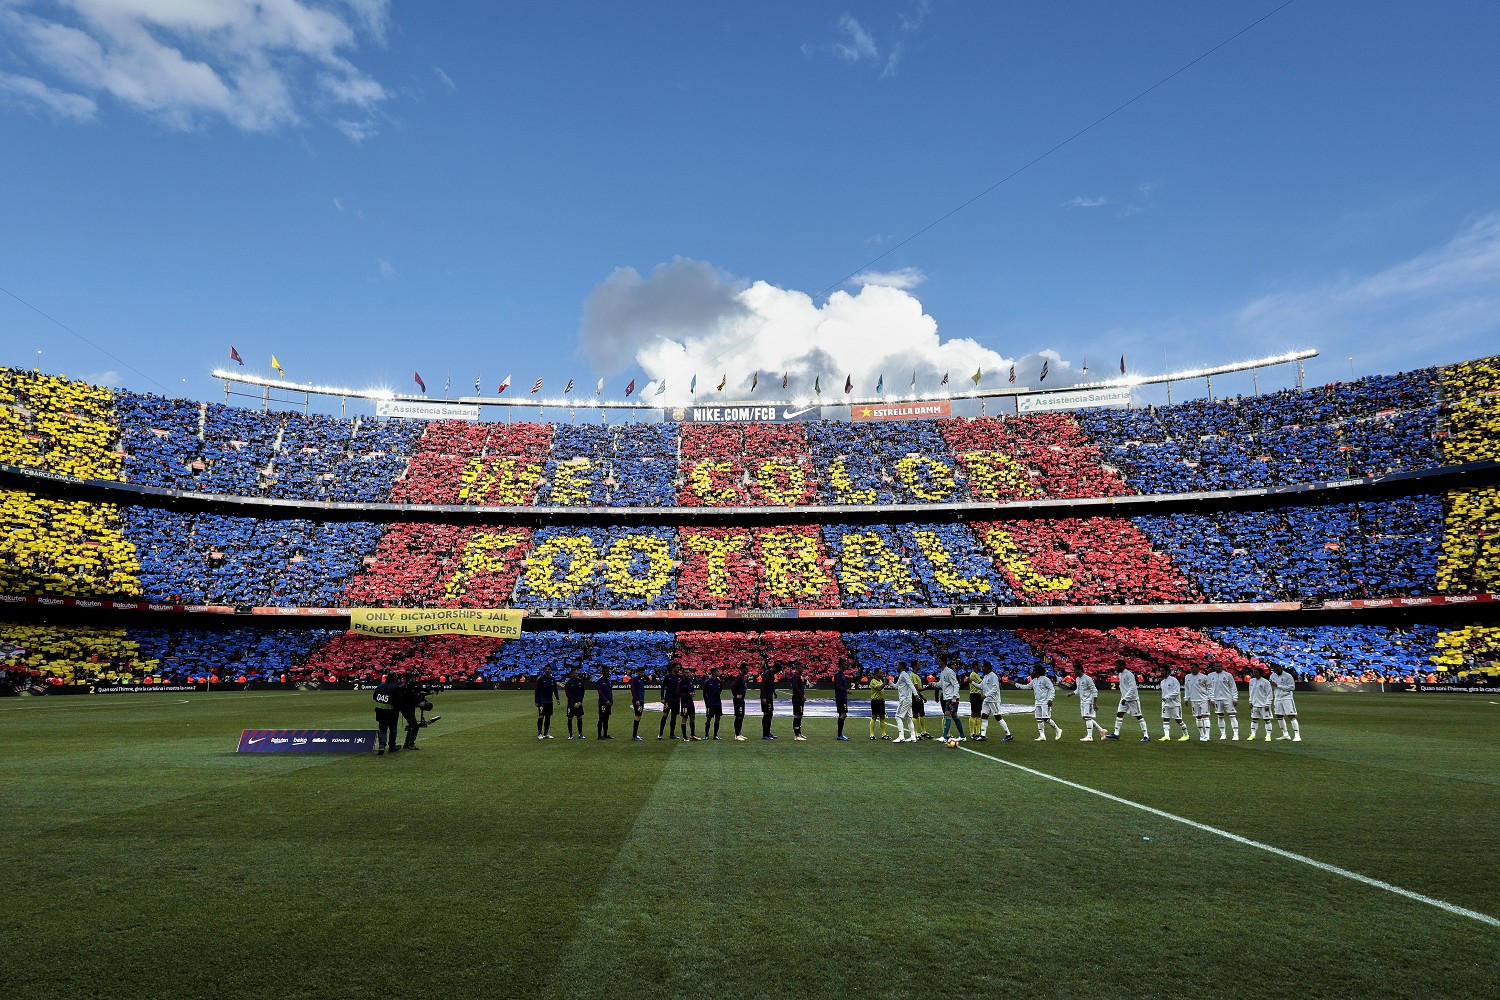 Giocare a calcetto al Camp Nou di Barcellona? Si può fare |  Sport e Vai